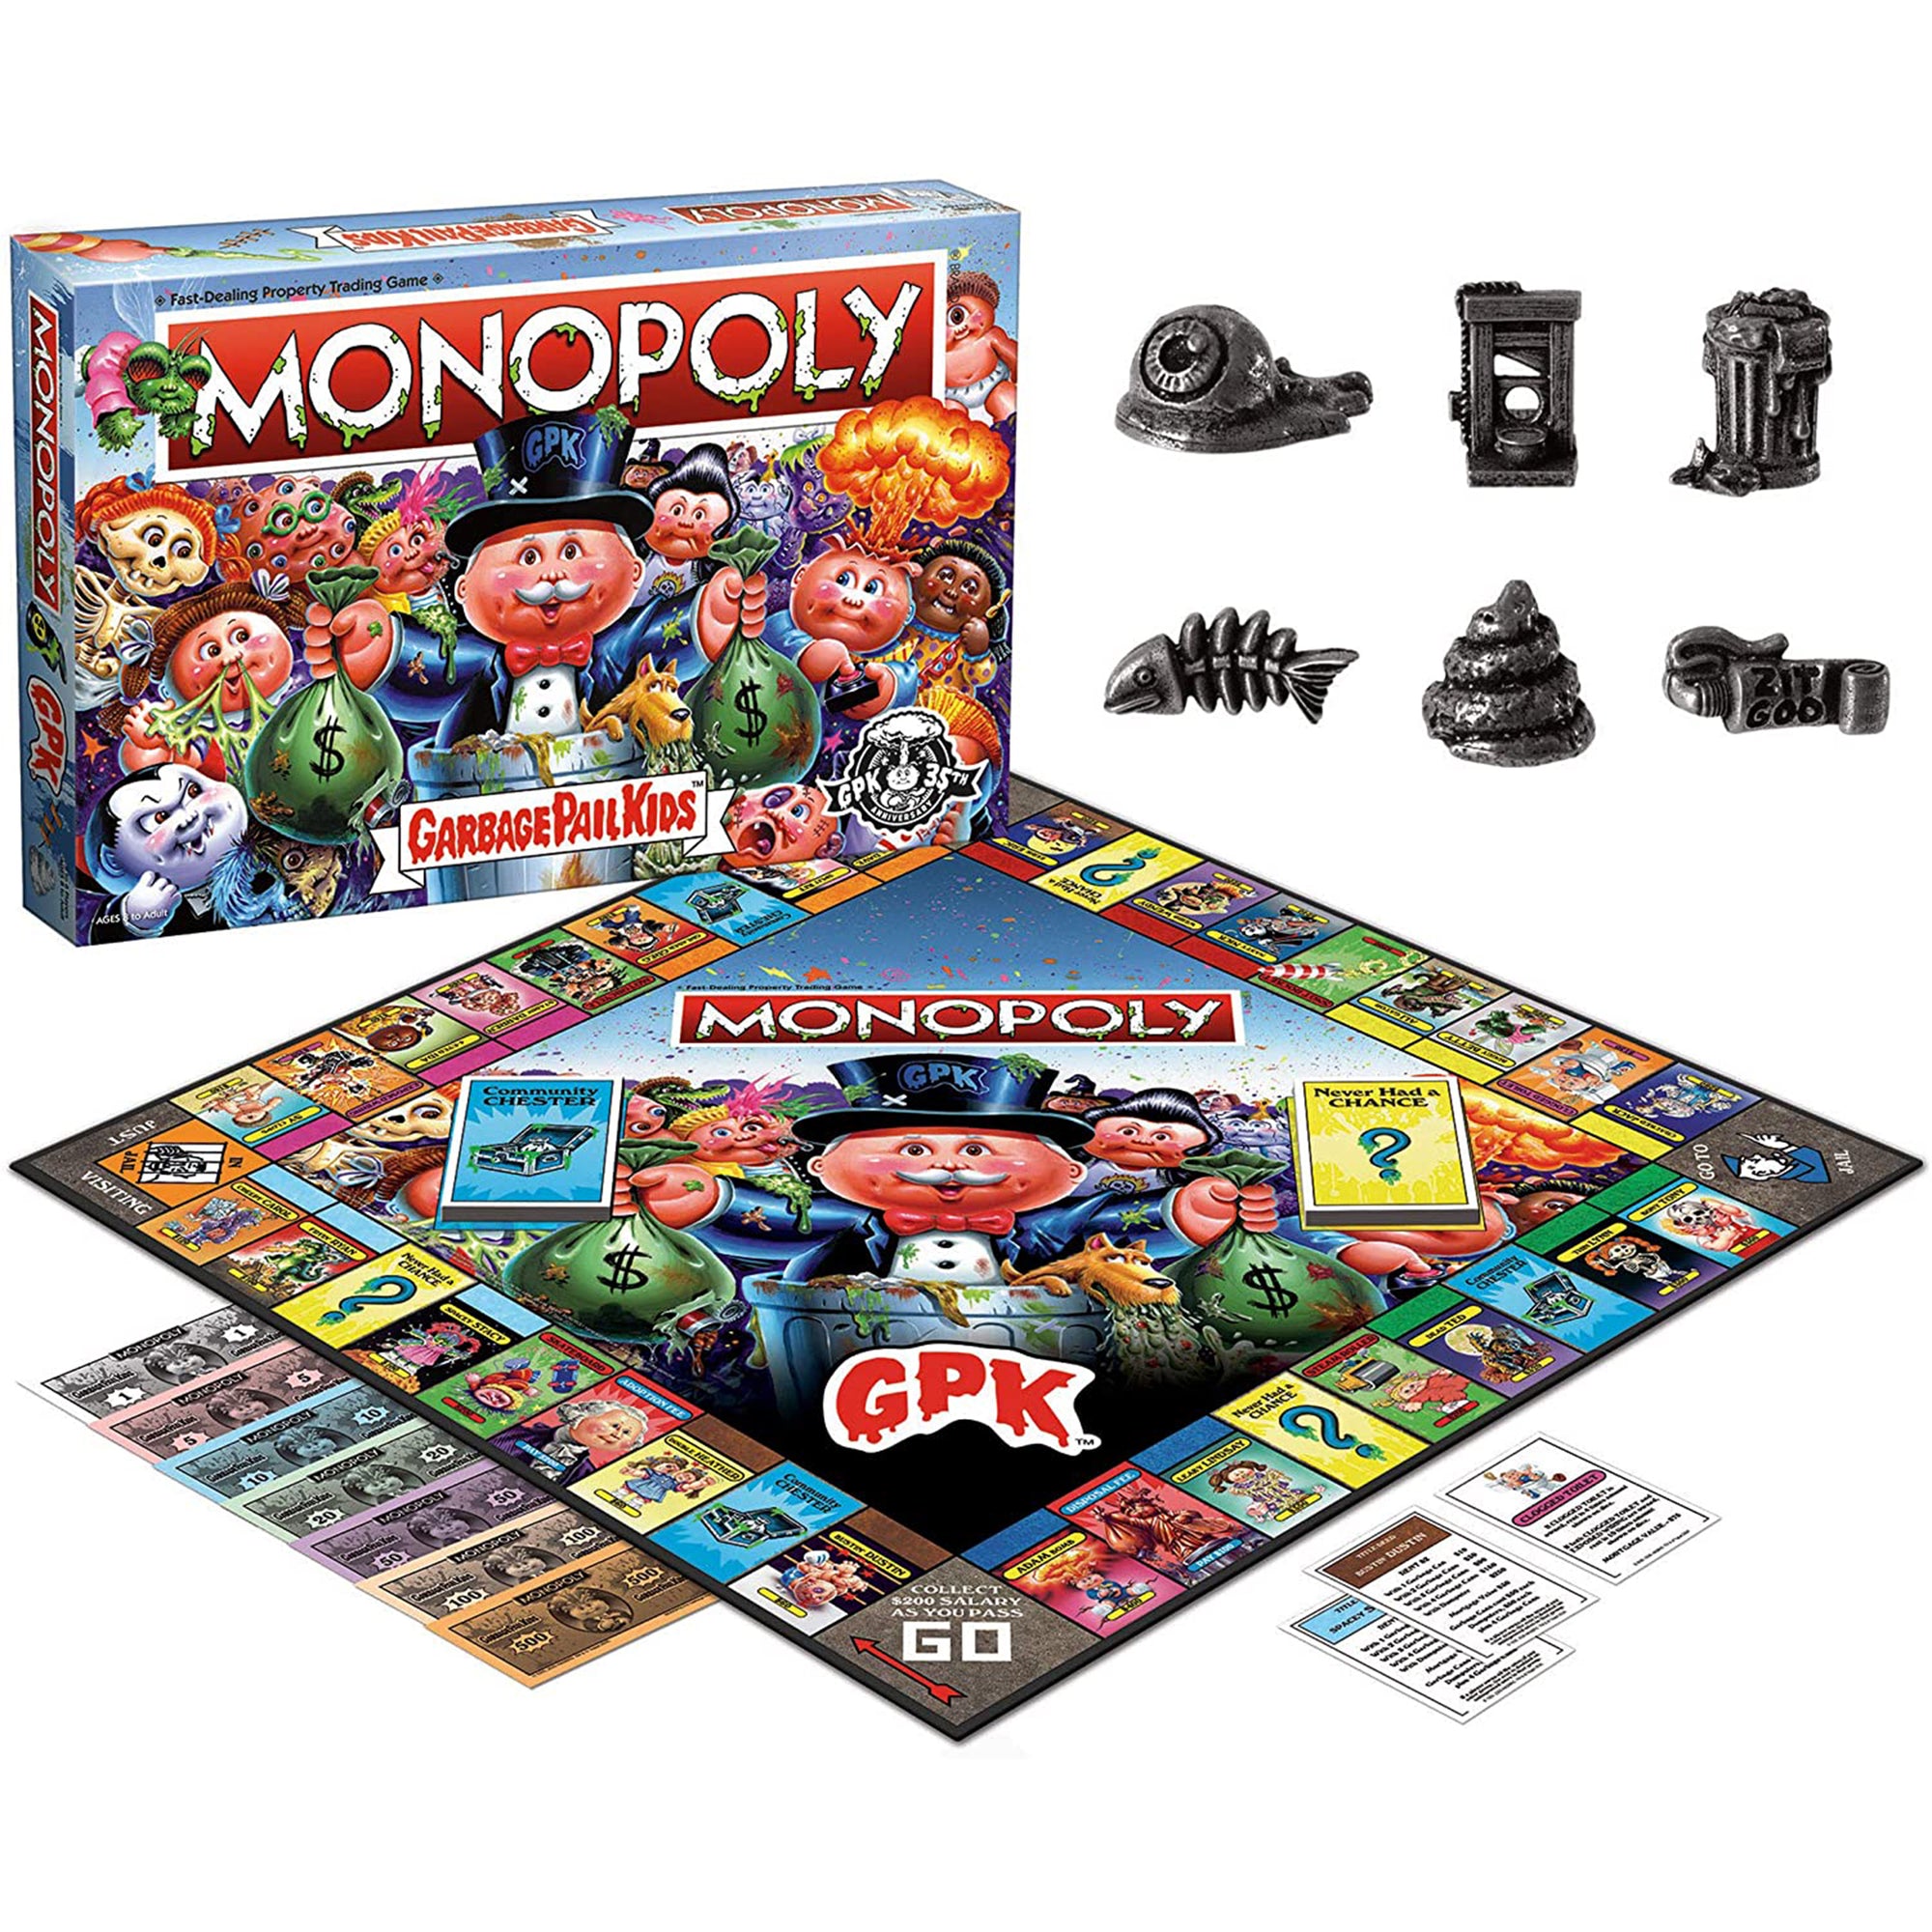 Monopoly Garbage Pail Kids